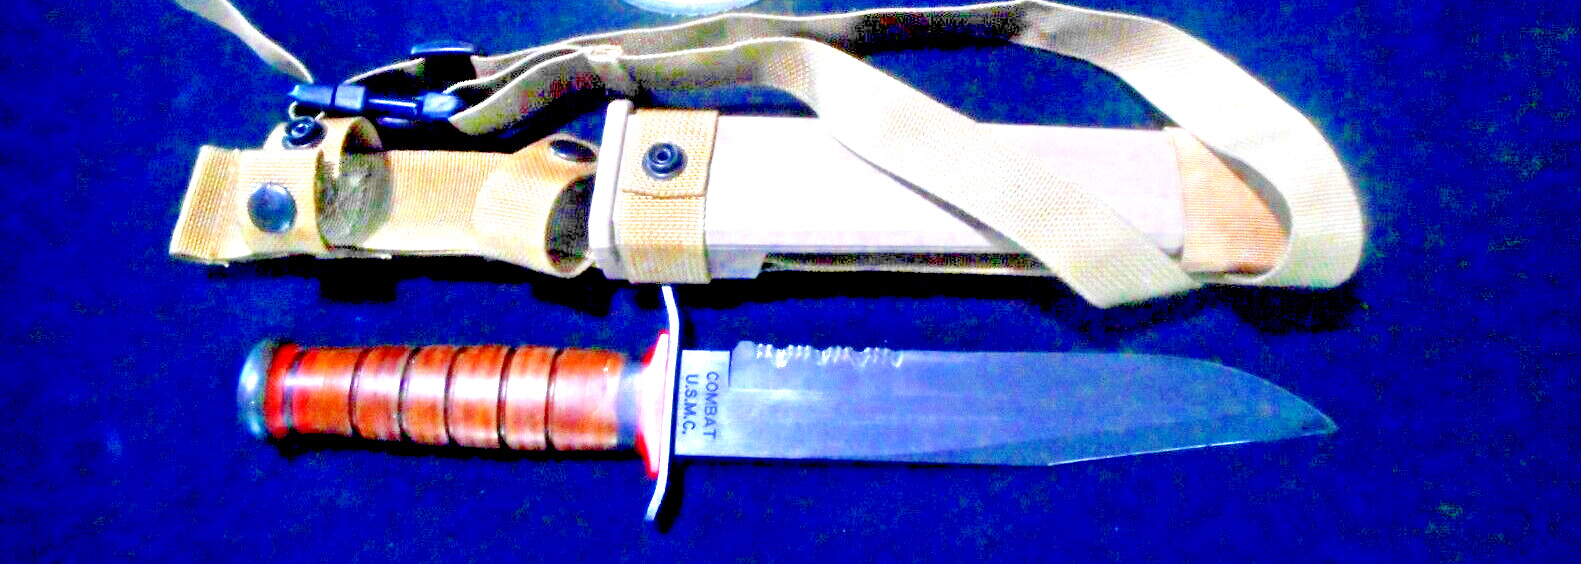 NOS 100% U.S. Marine USMC Unissued 2003 MK2 OKC3S WWII Clone Knife Leather Grip